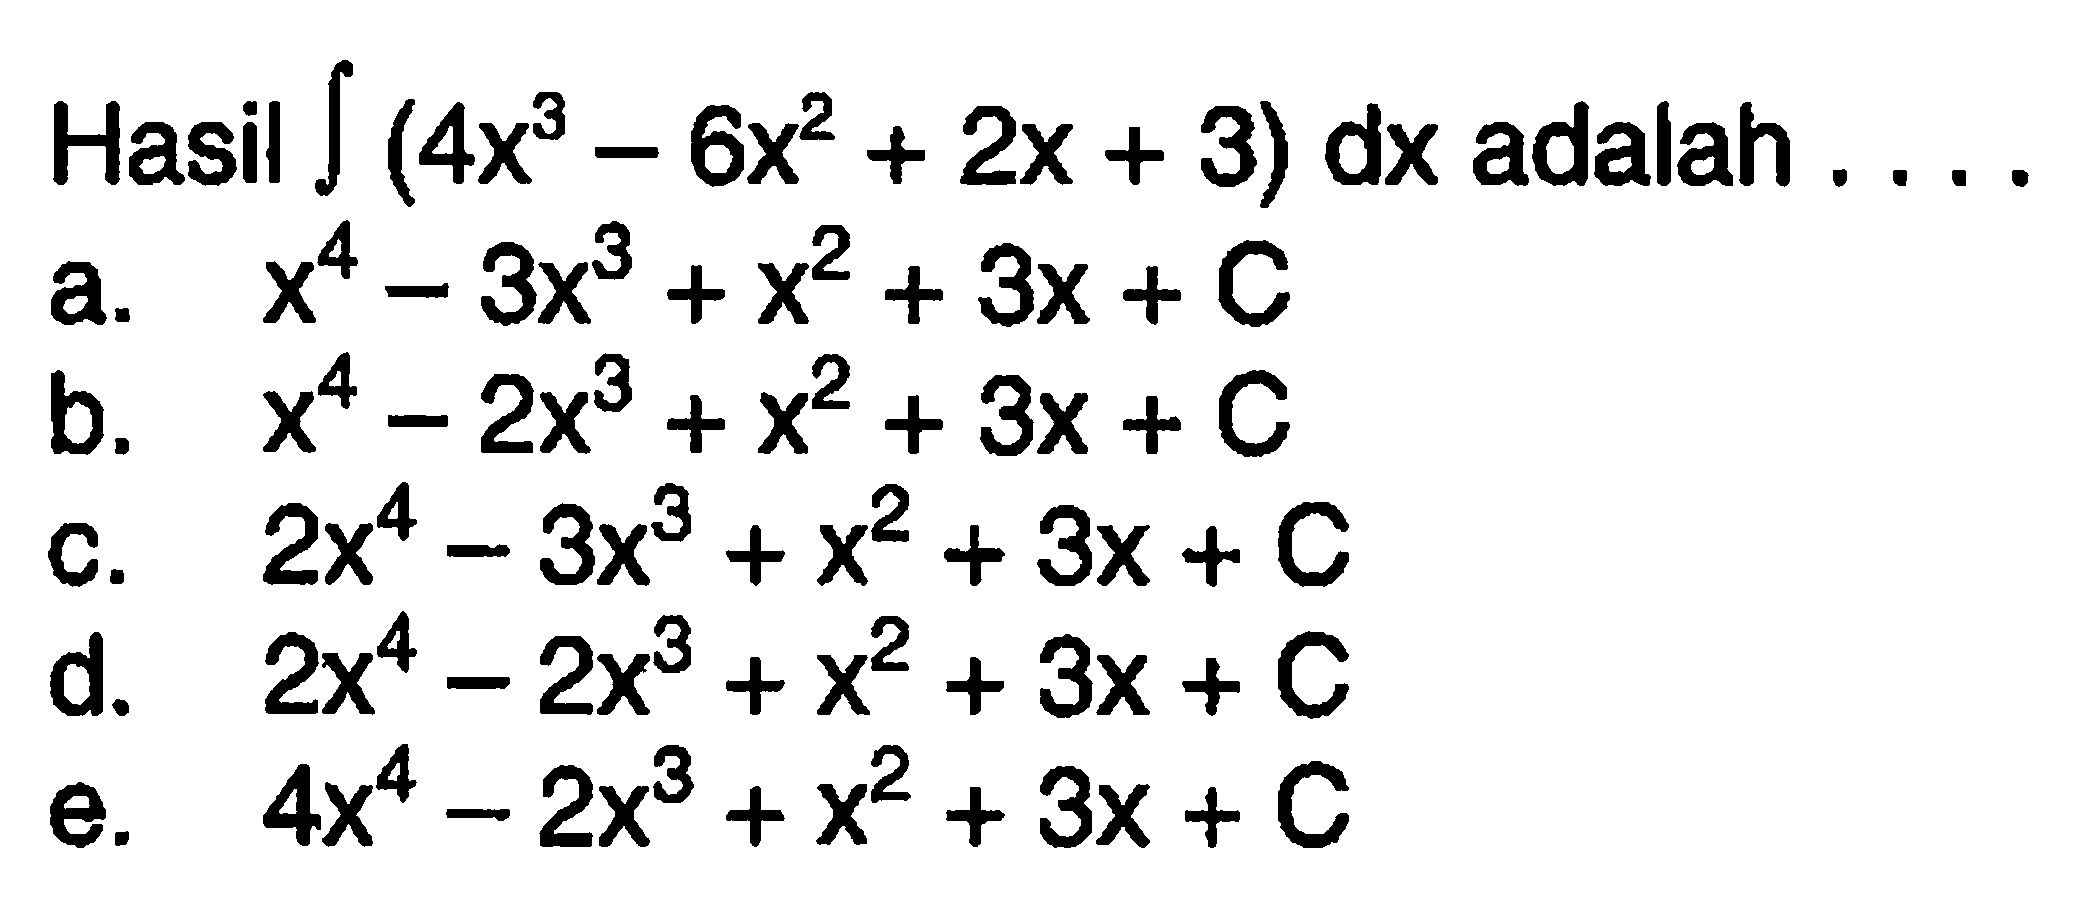 Hasil integral (4x^3-6x^2+2x+3) dx  adalah  .... 